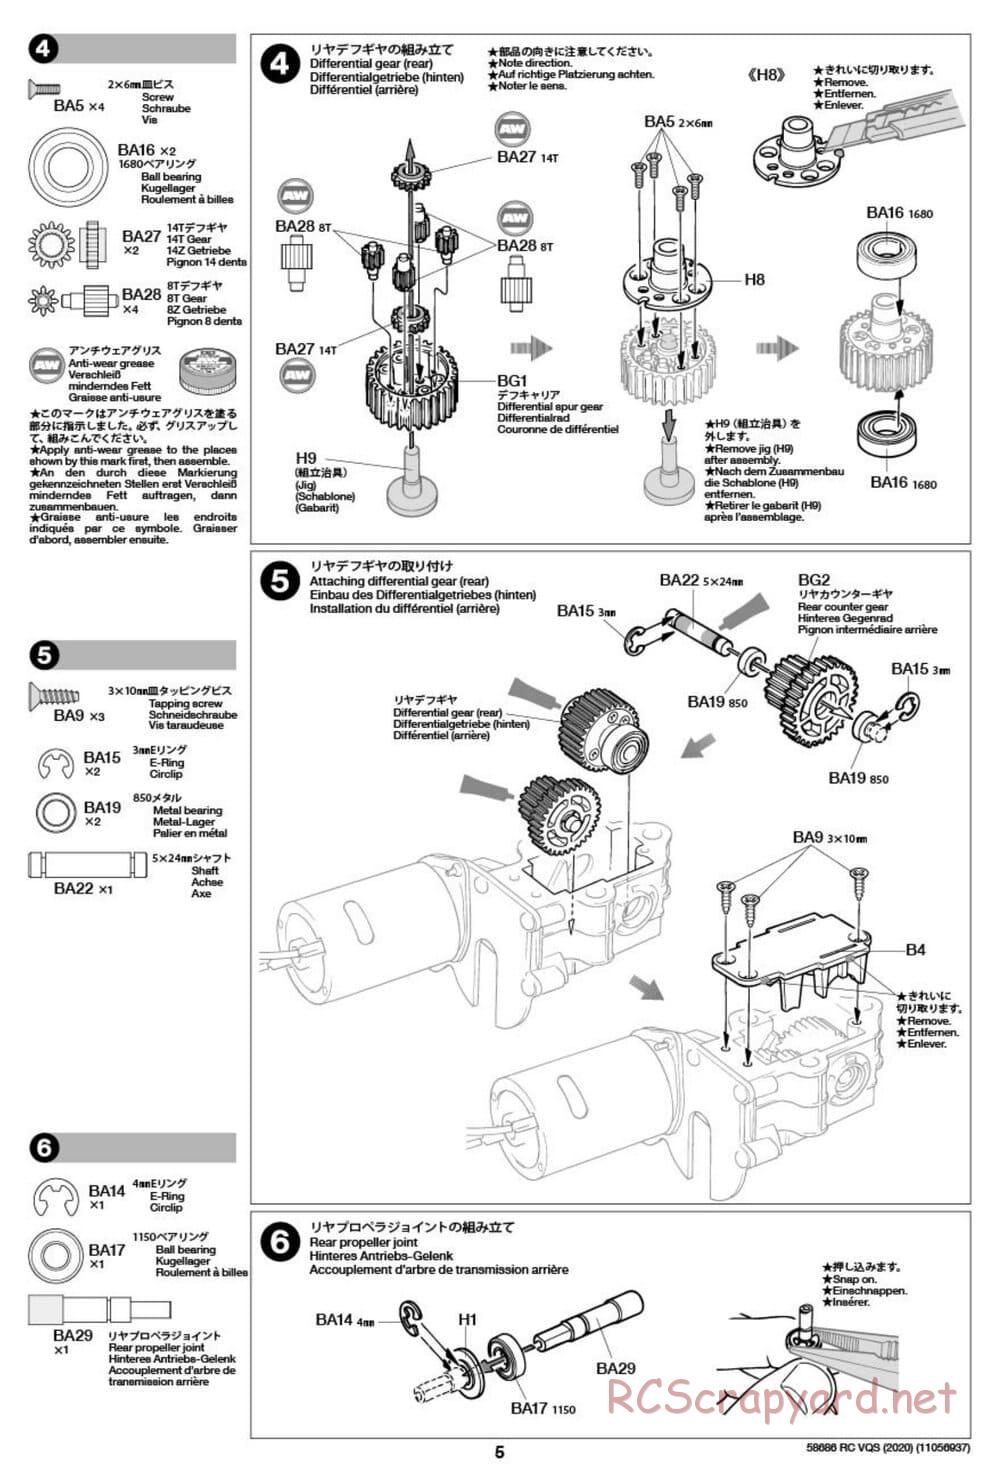 Tamiya - VQS (2020) - AV Chassis - Manual - Page 5